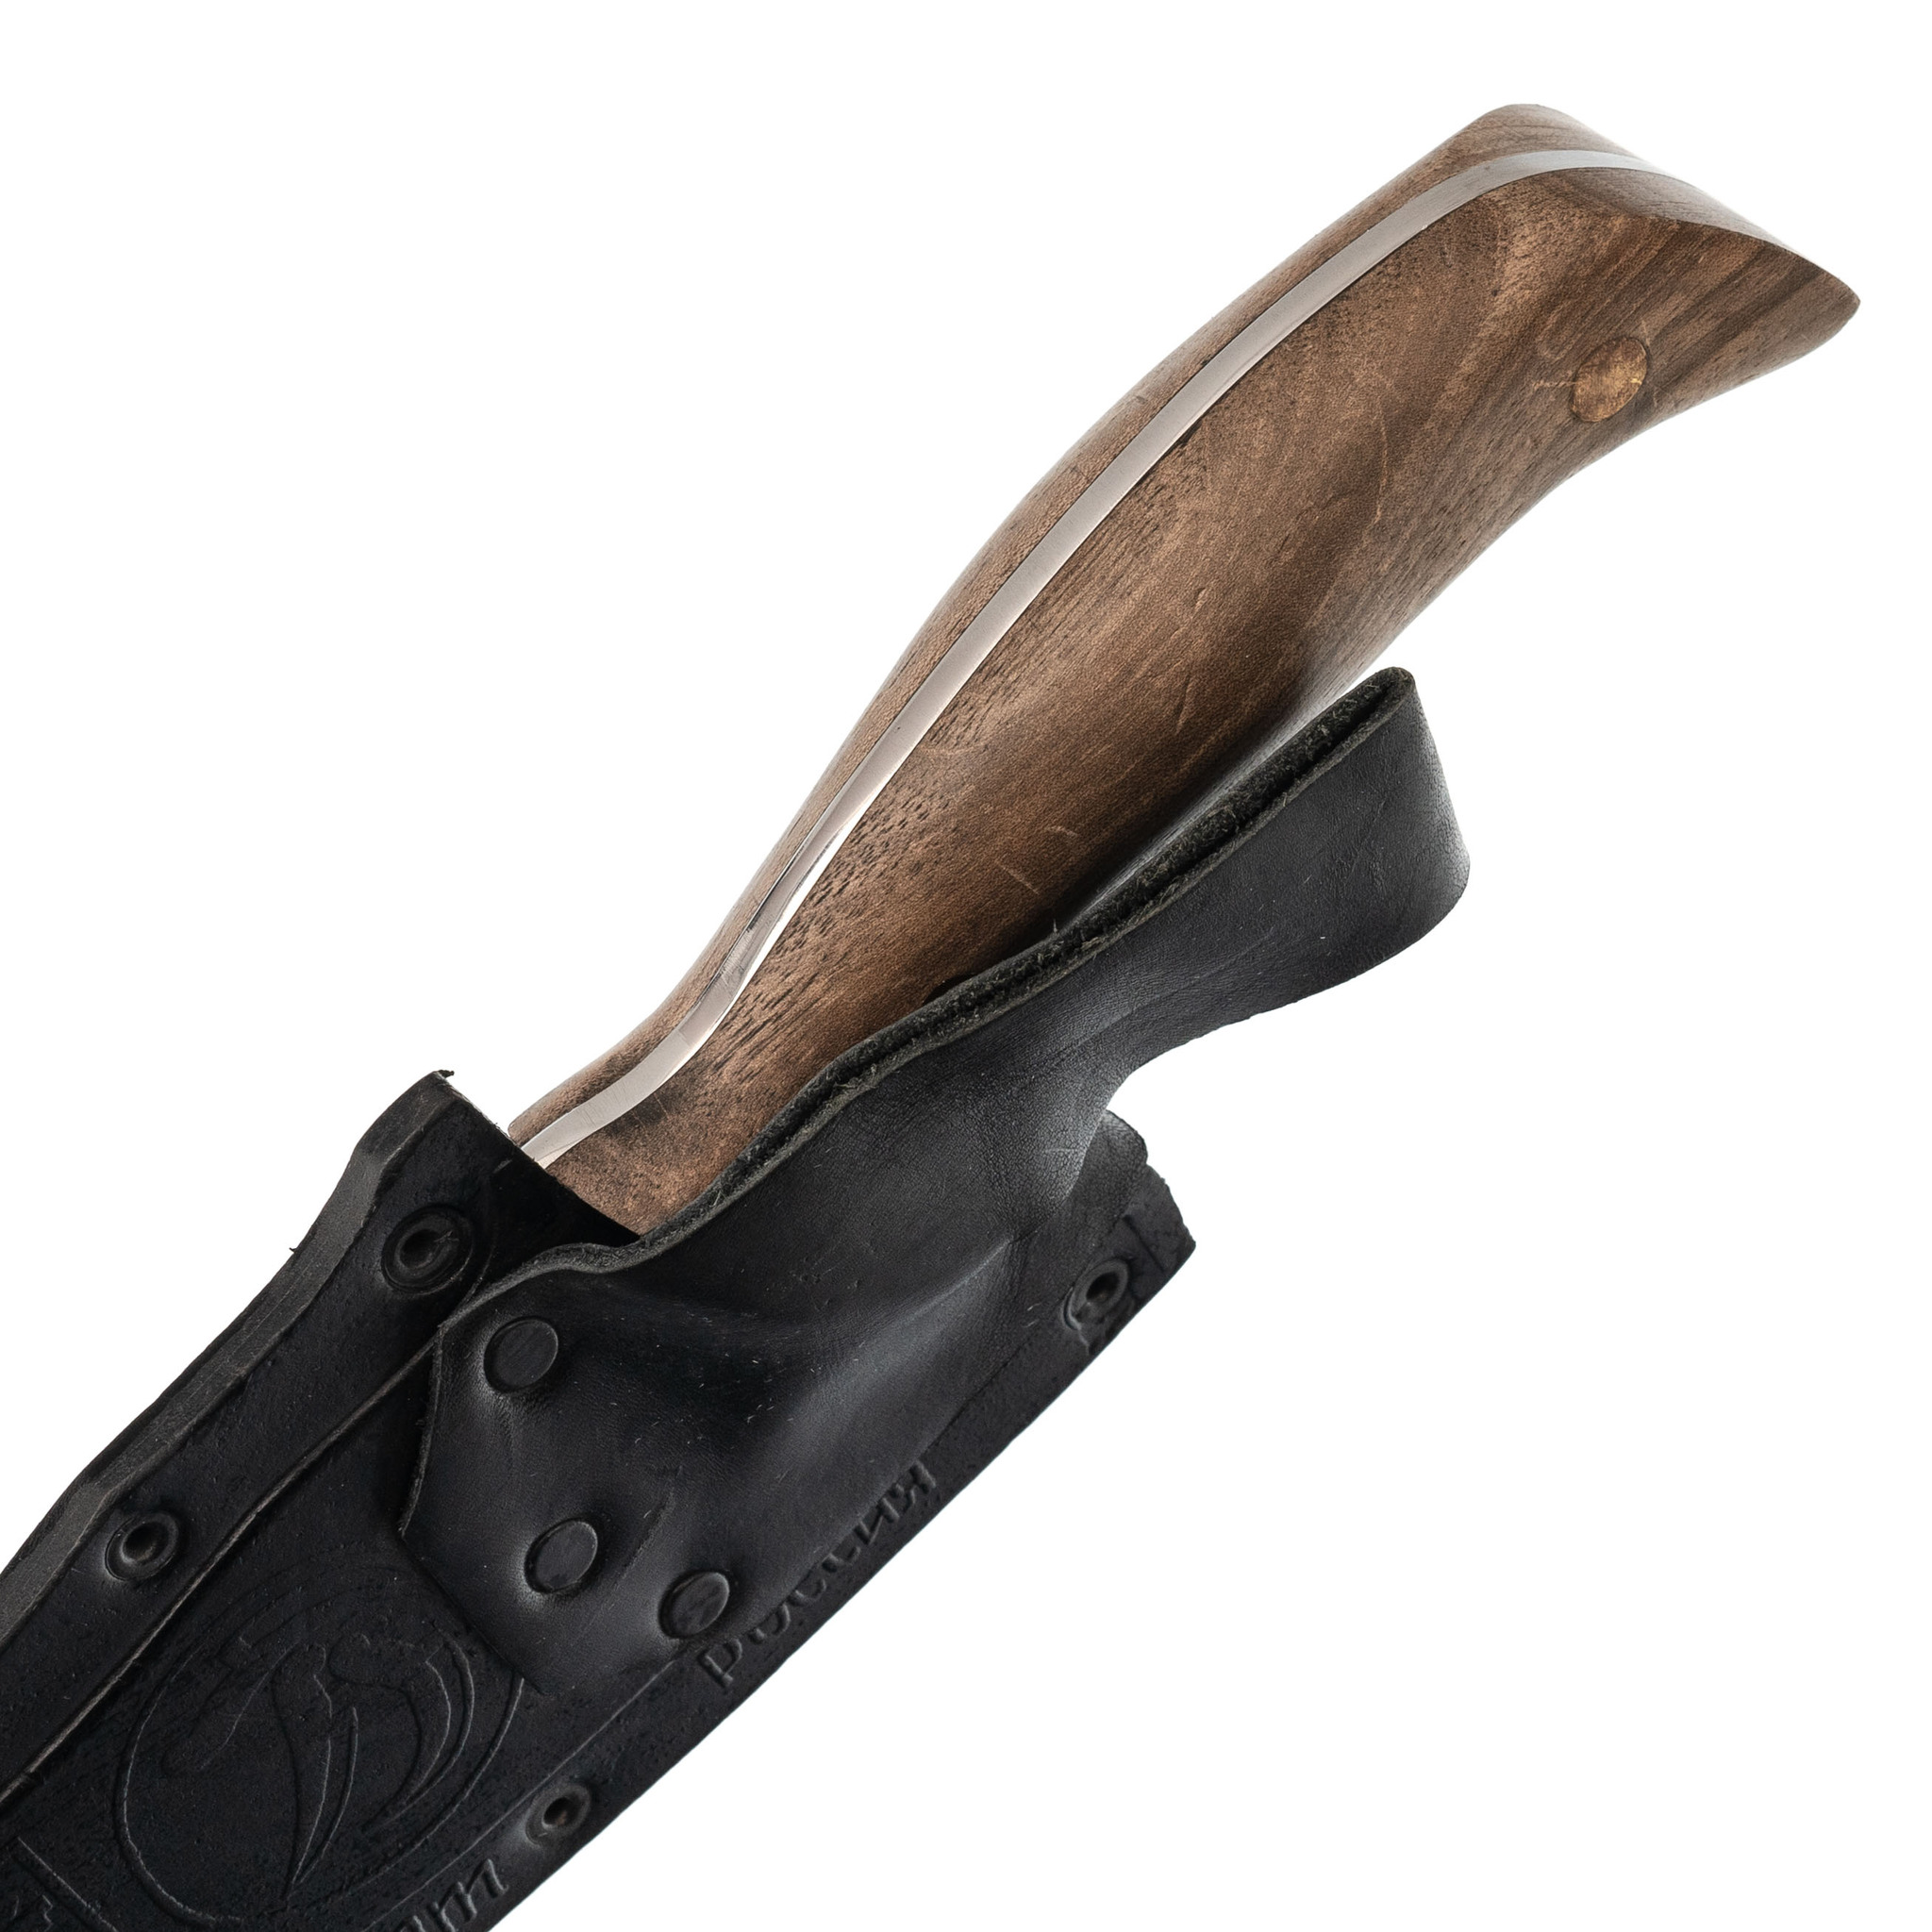  Осетр с кожаной рукоятью AUS-8, Кизляр -  нож с гравировкой .